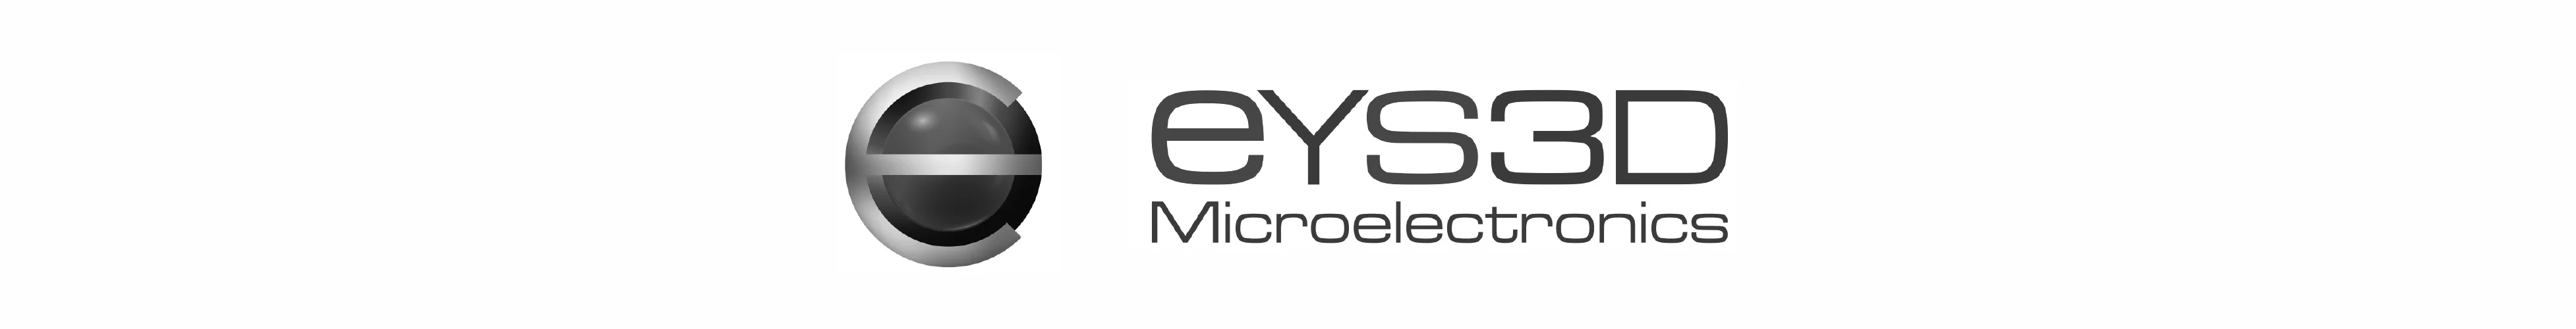 eYS3D_logo